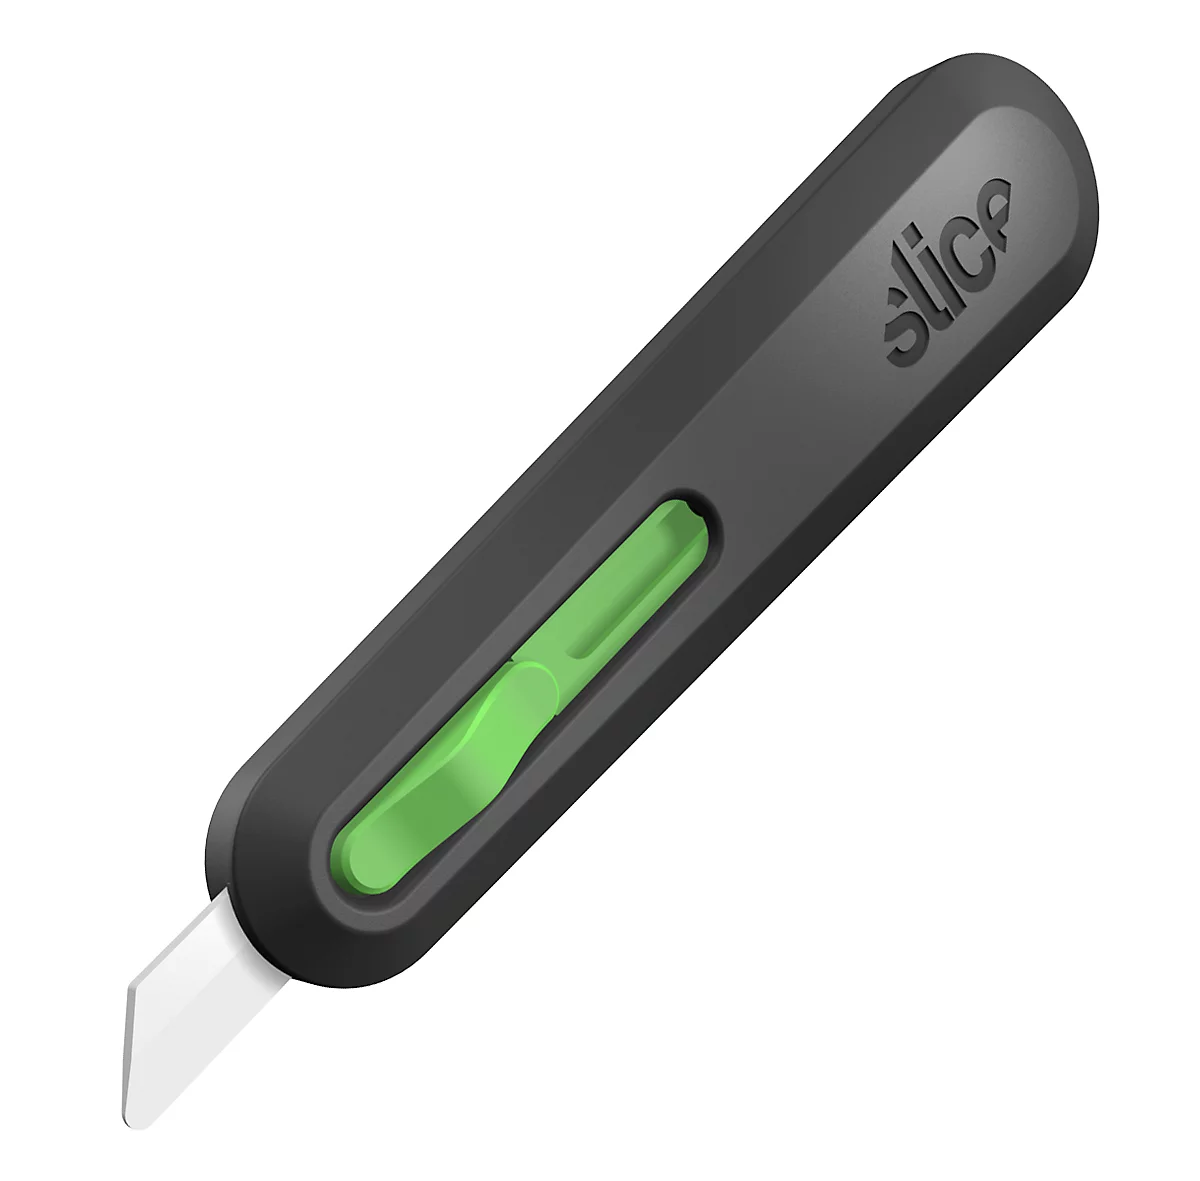 Slice cutter, met automatische intrekking van het mes, voor links- en rechtshandigen